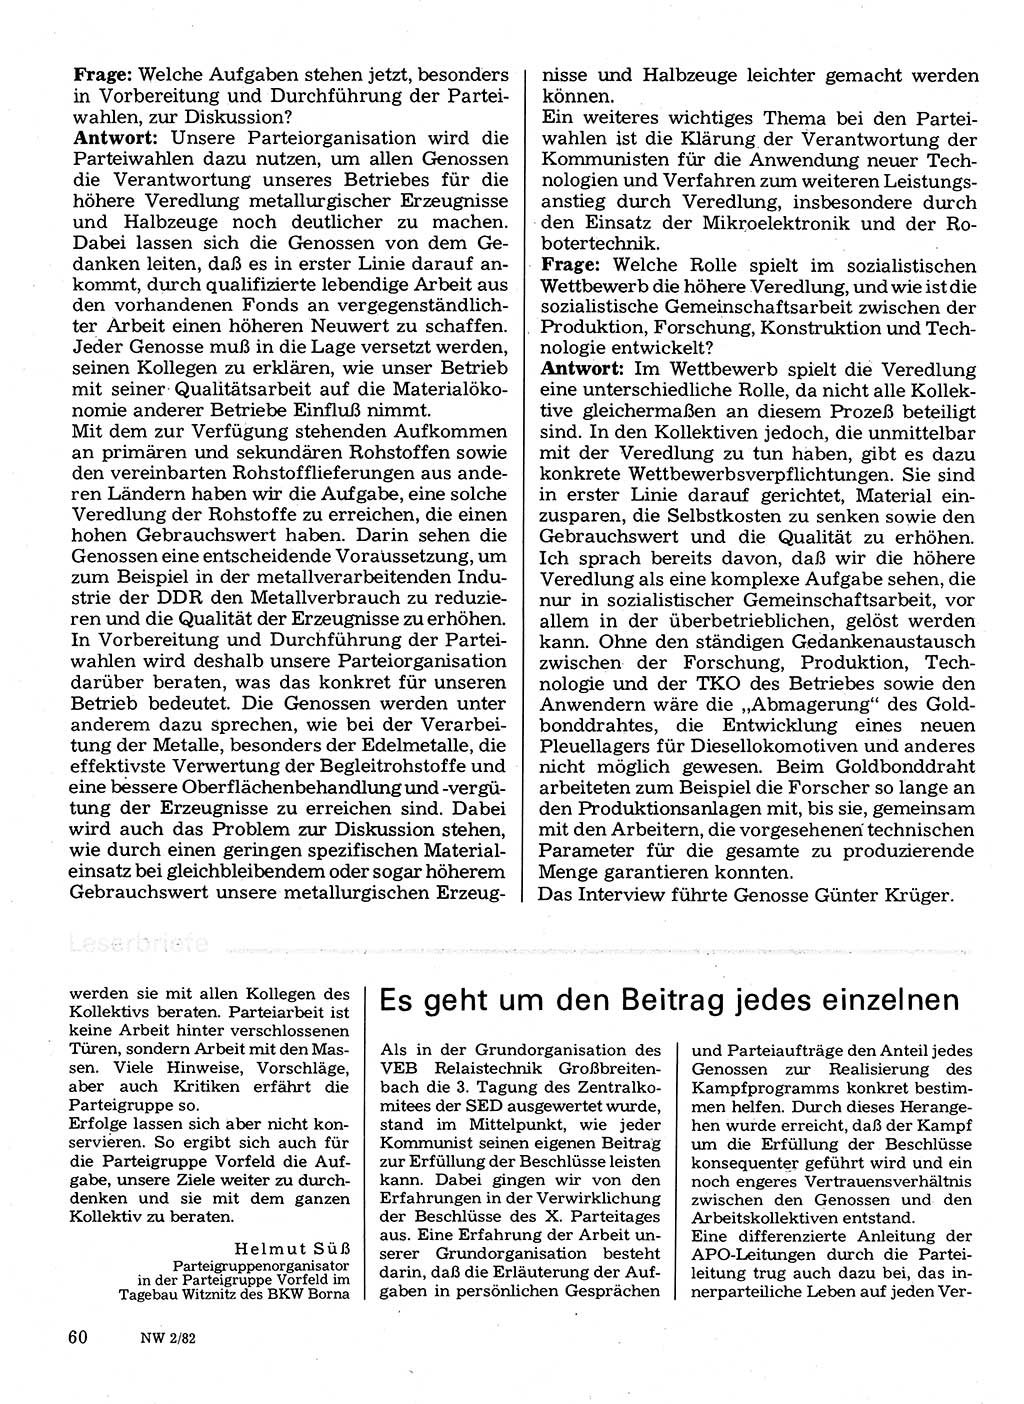 Neuer Weg (NW), Organ des Zentralkomitees (ZK) der SED (Sozialistische Einheitspartei Deutschlands) für Fragen des Parteilebens, 37. Jahrgang [Deutsche Demokratische Republik (DDR)] 1982, Seite 60 (NW ZK SED DDR 1982, S. 60)